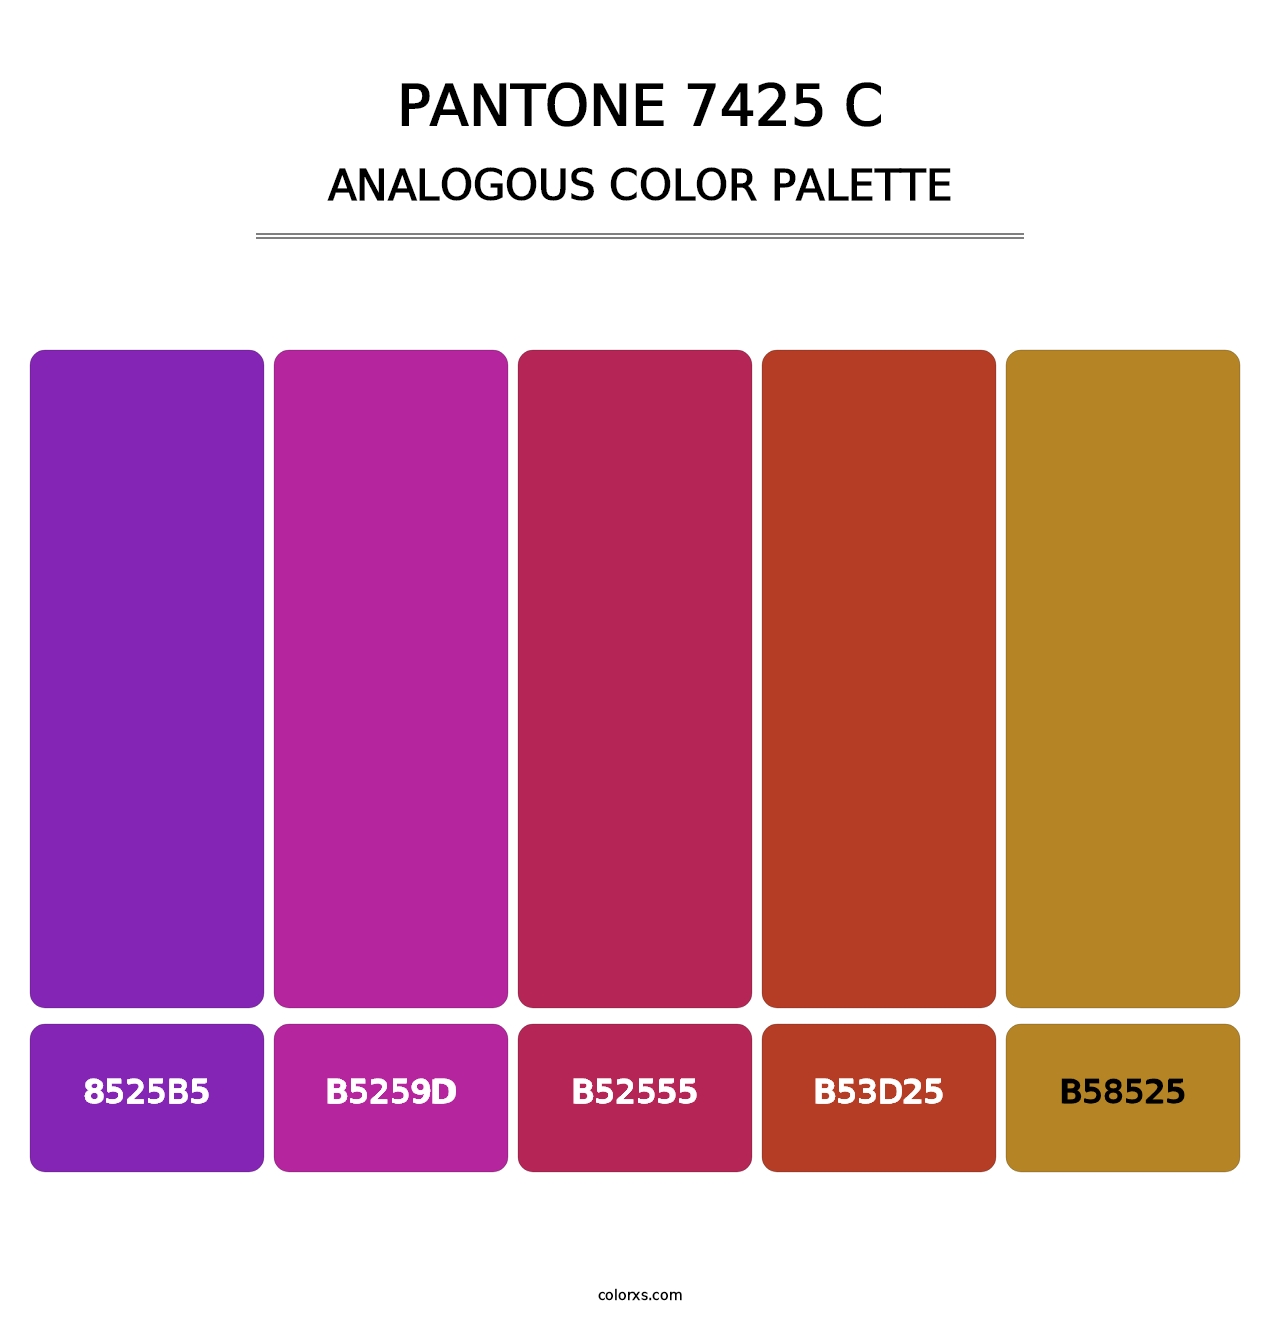 PANTONE 7425 C - Analogous Color Palette